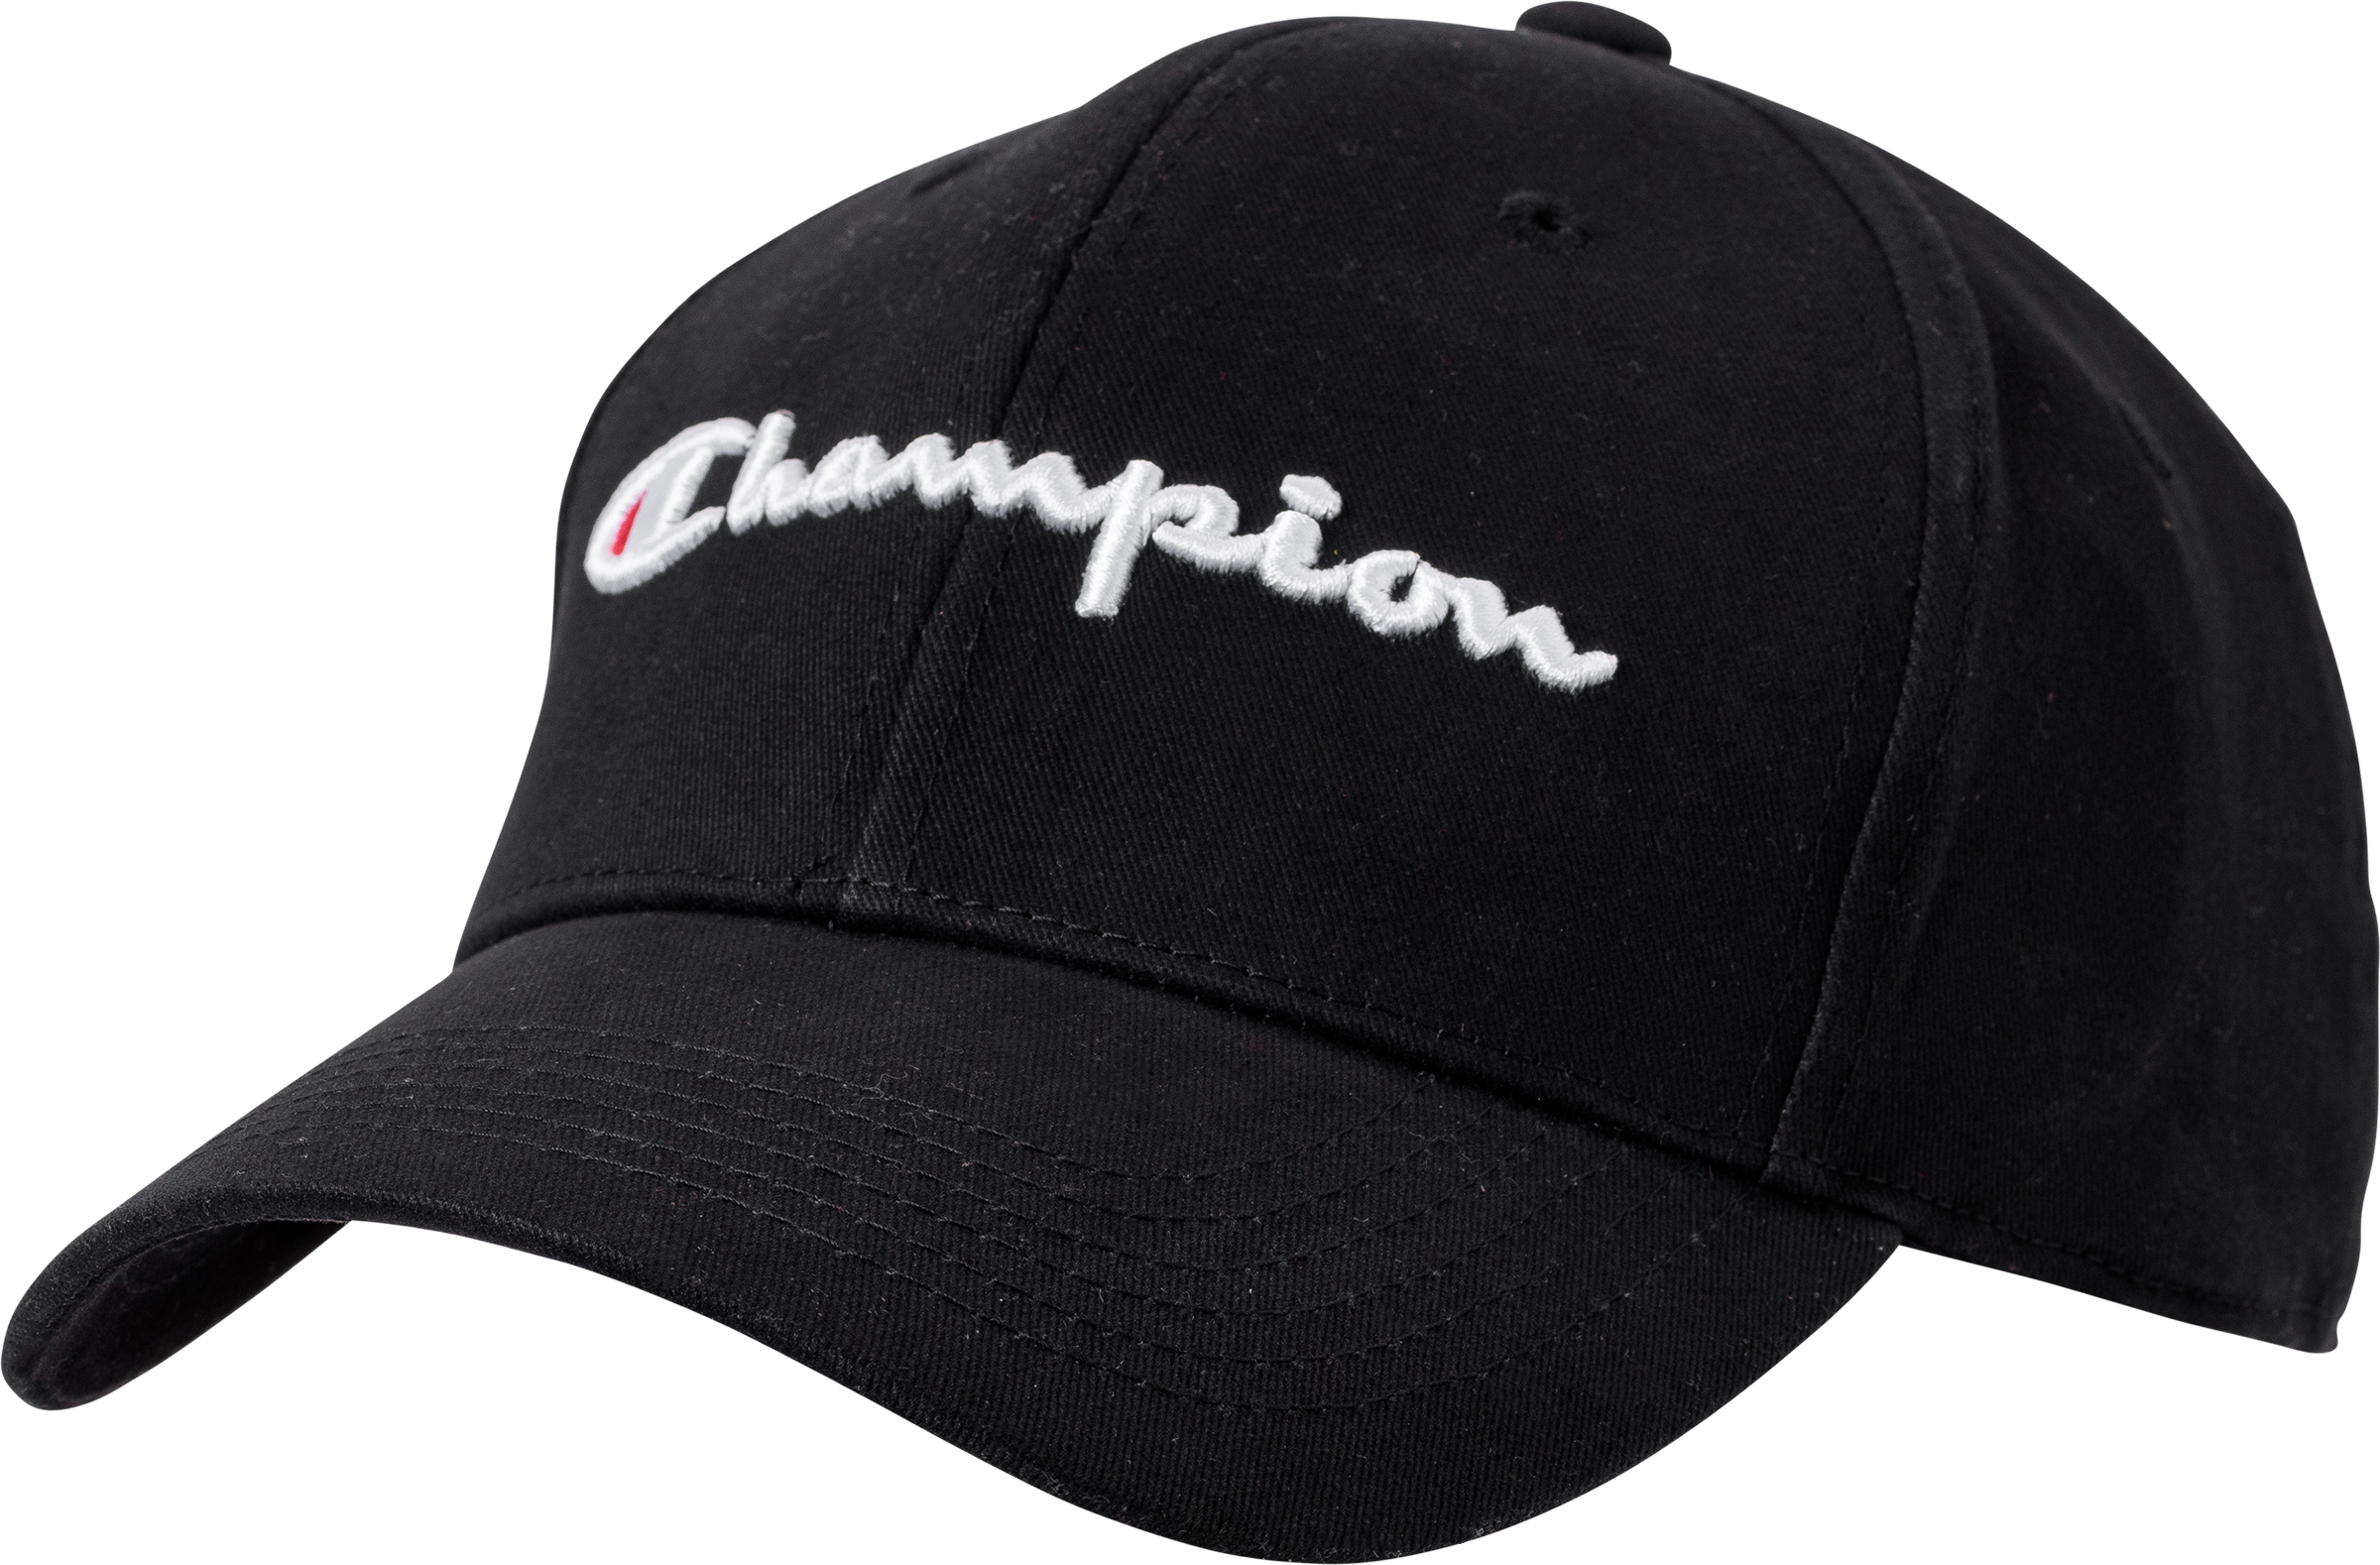 hat champion